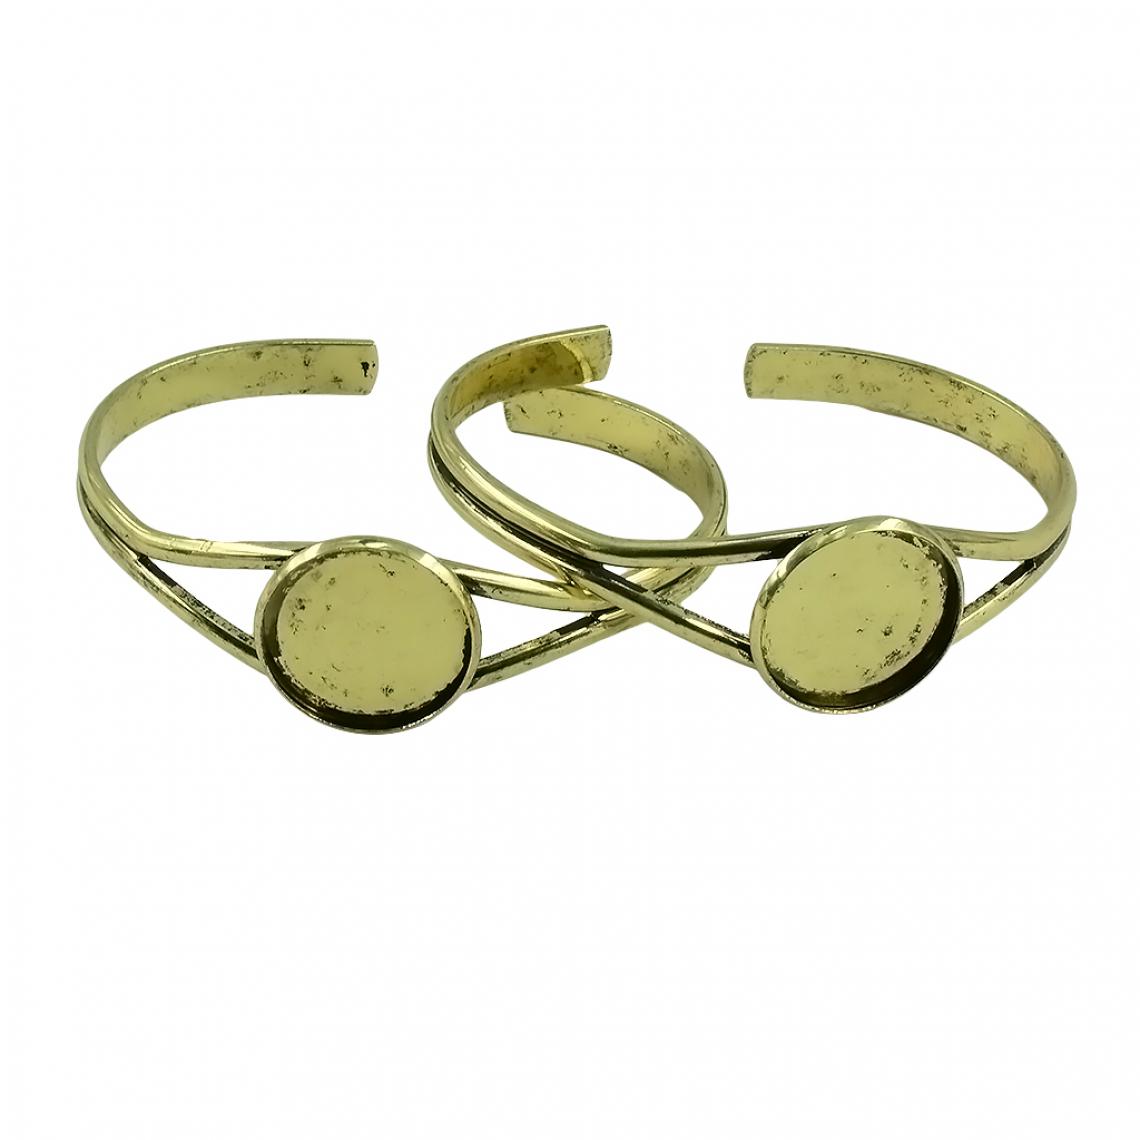 marque generique - 2pcs 20mm bangle réglages manchette bracelet cabochon blank bezel tray bronze - Bracelet connecté